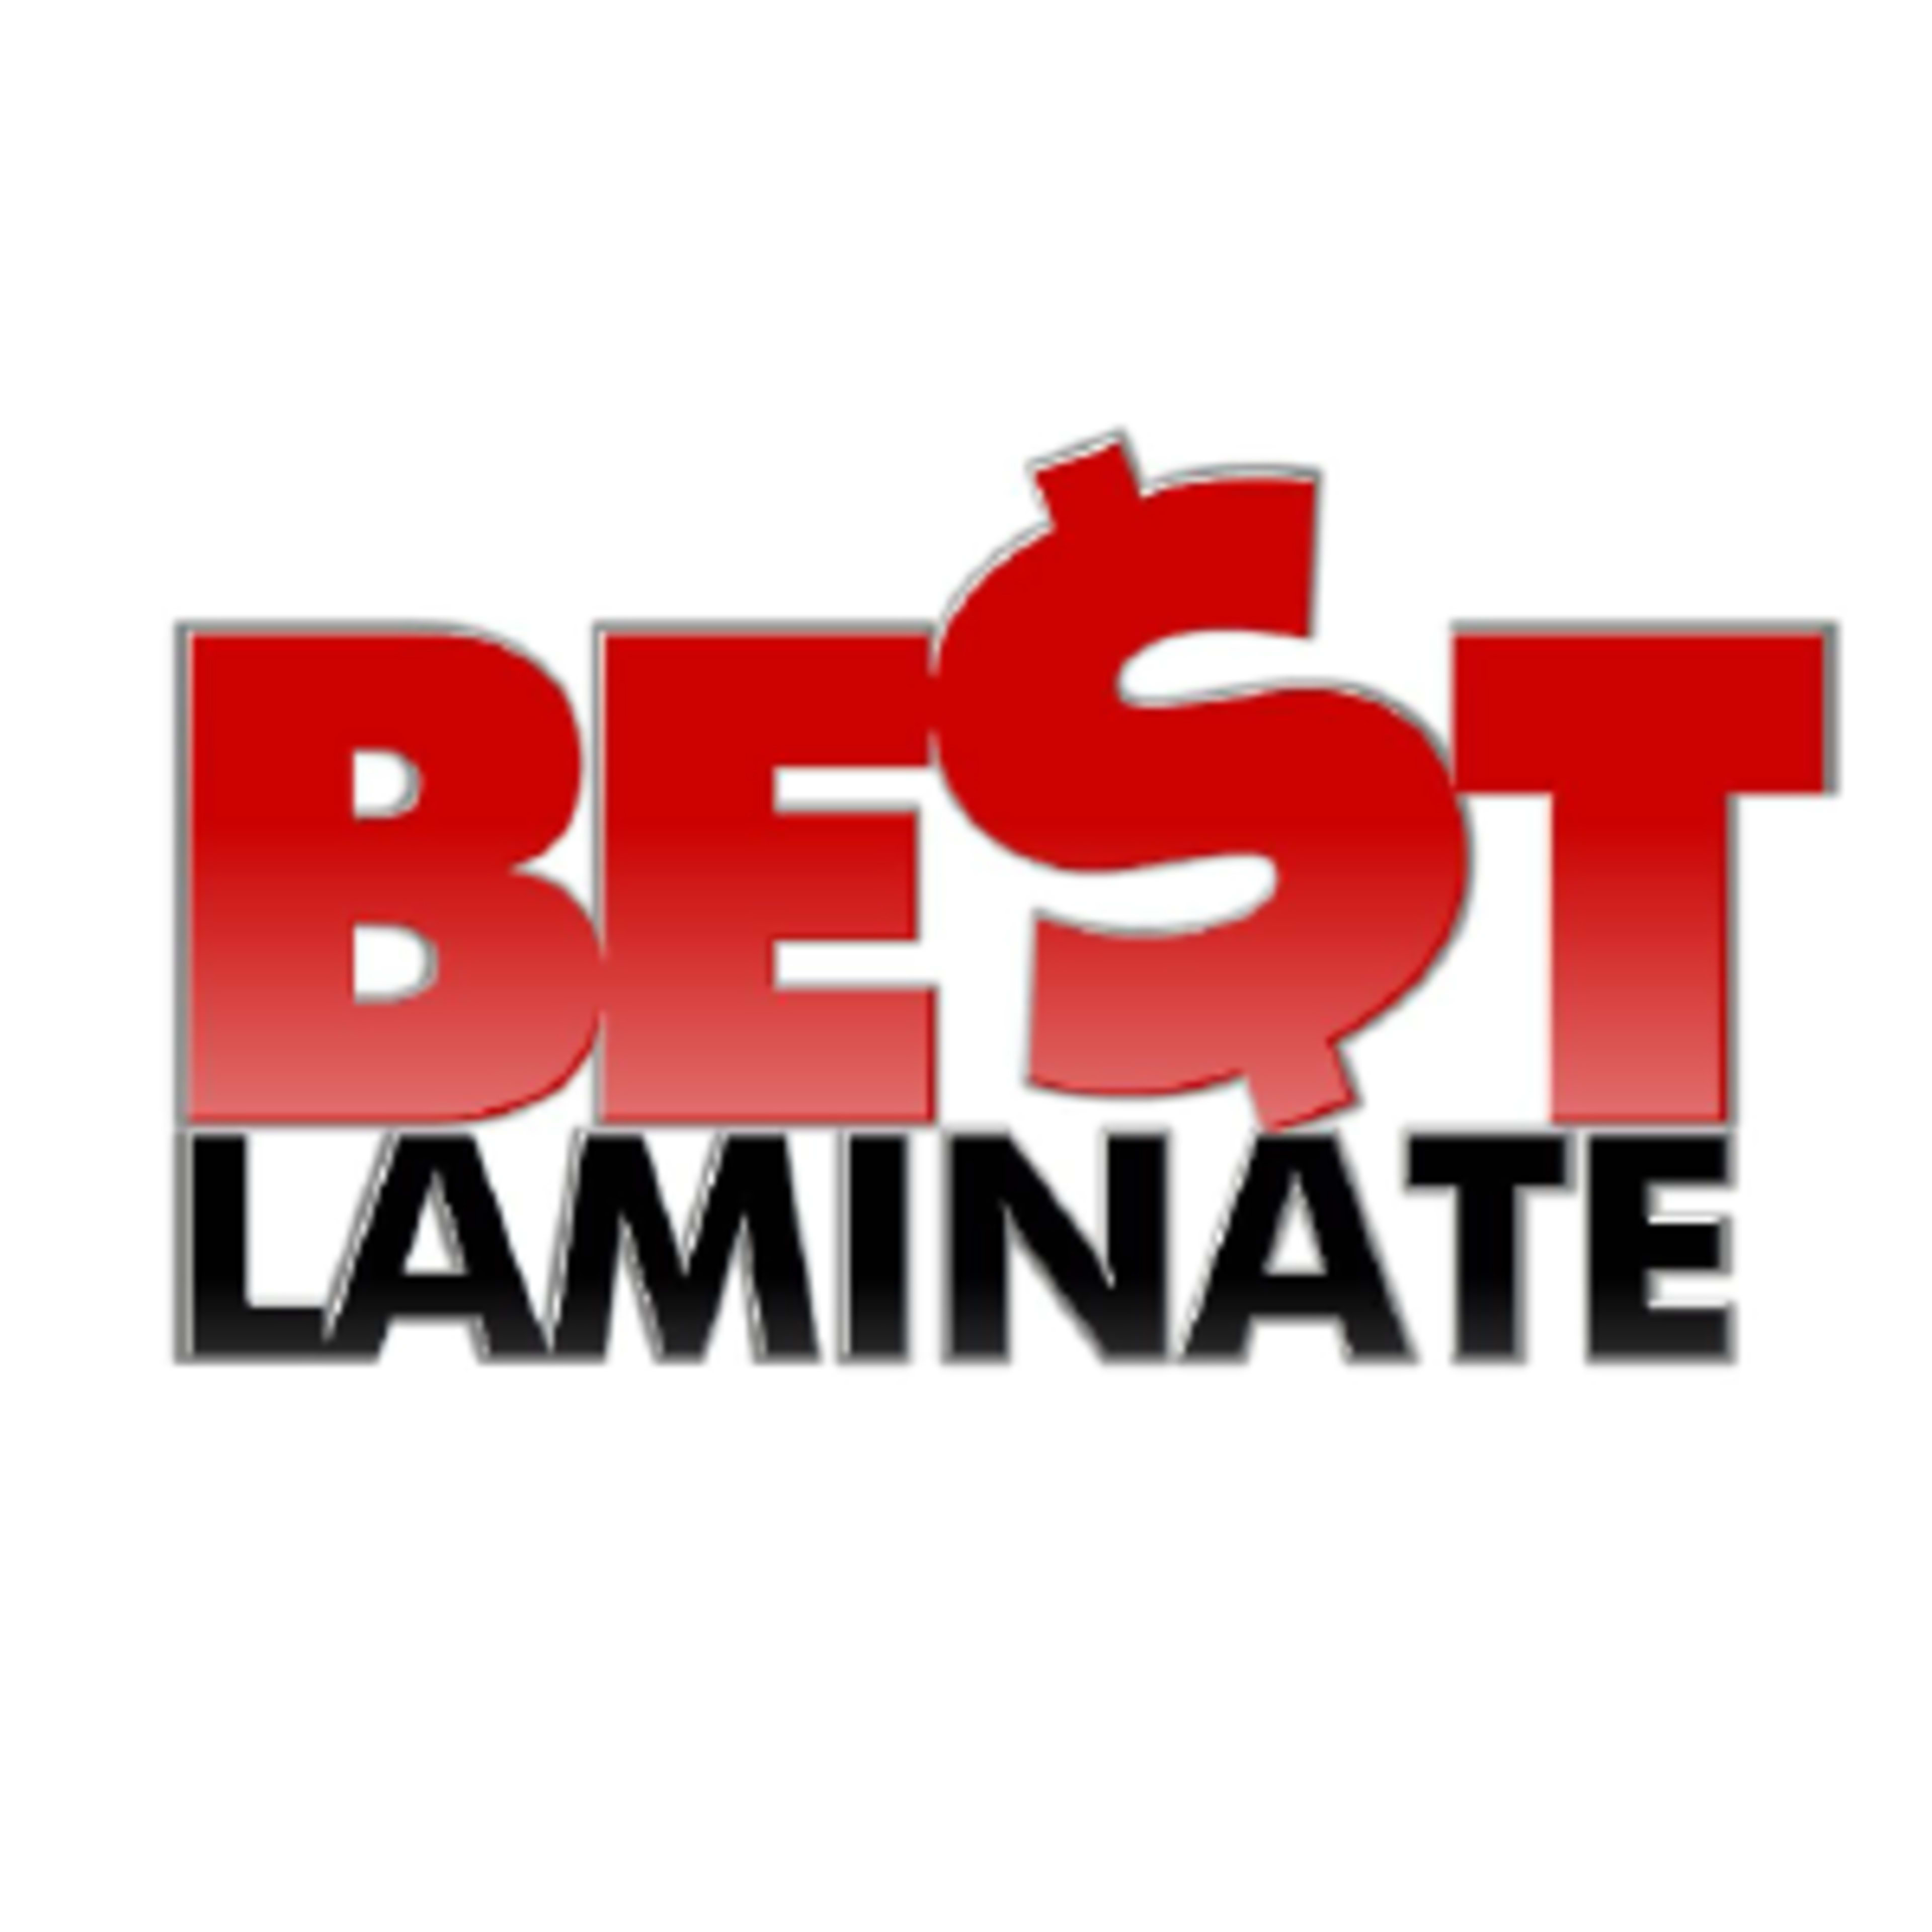 Best LaminateCode